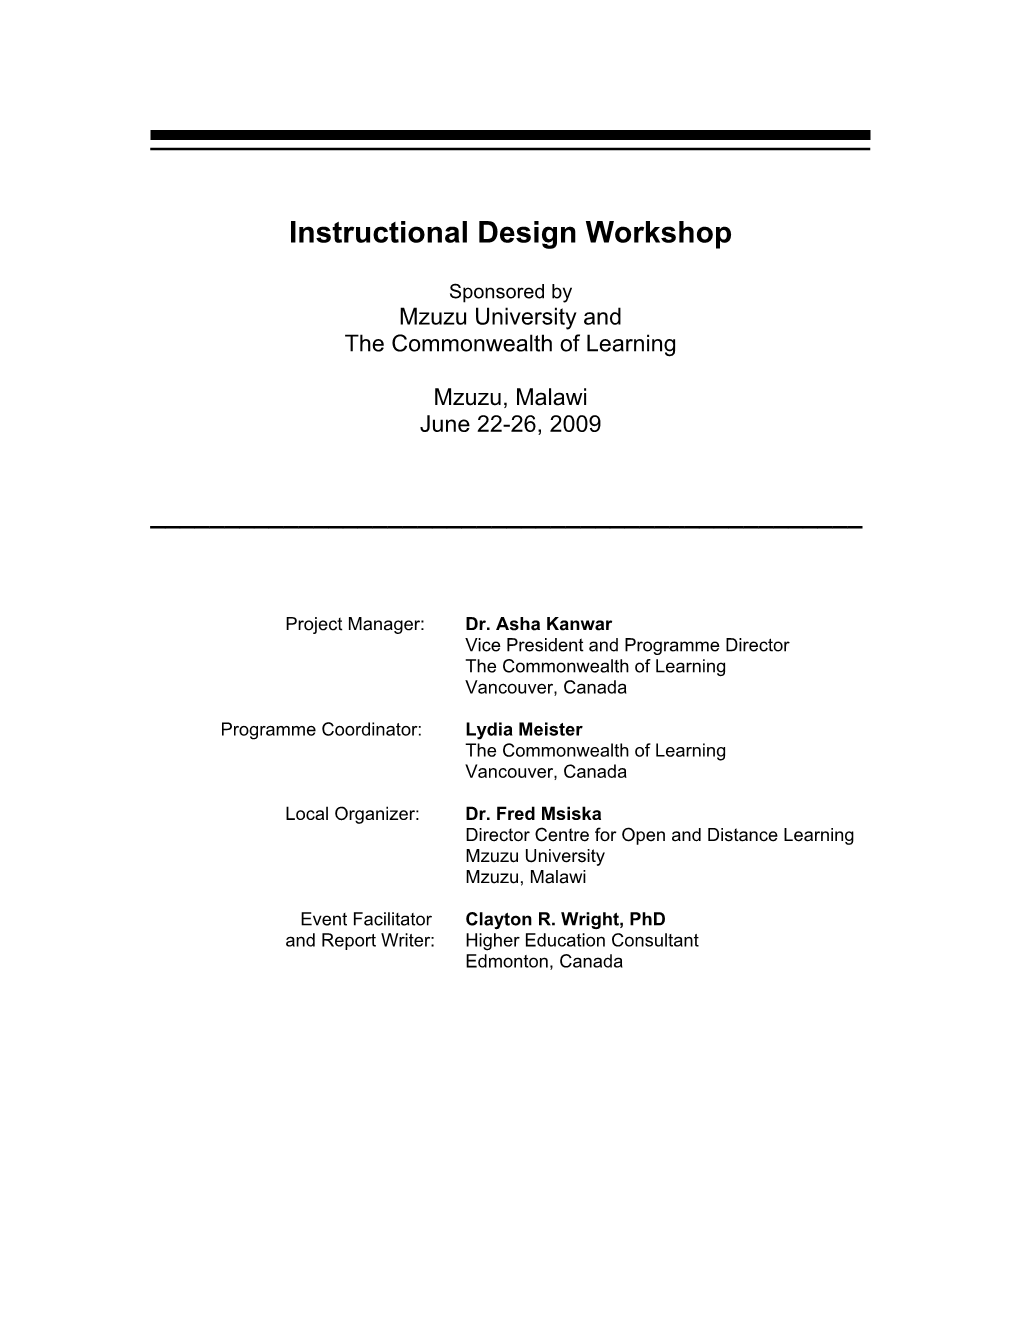 National Workshop on Instructional Design